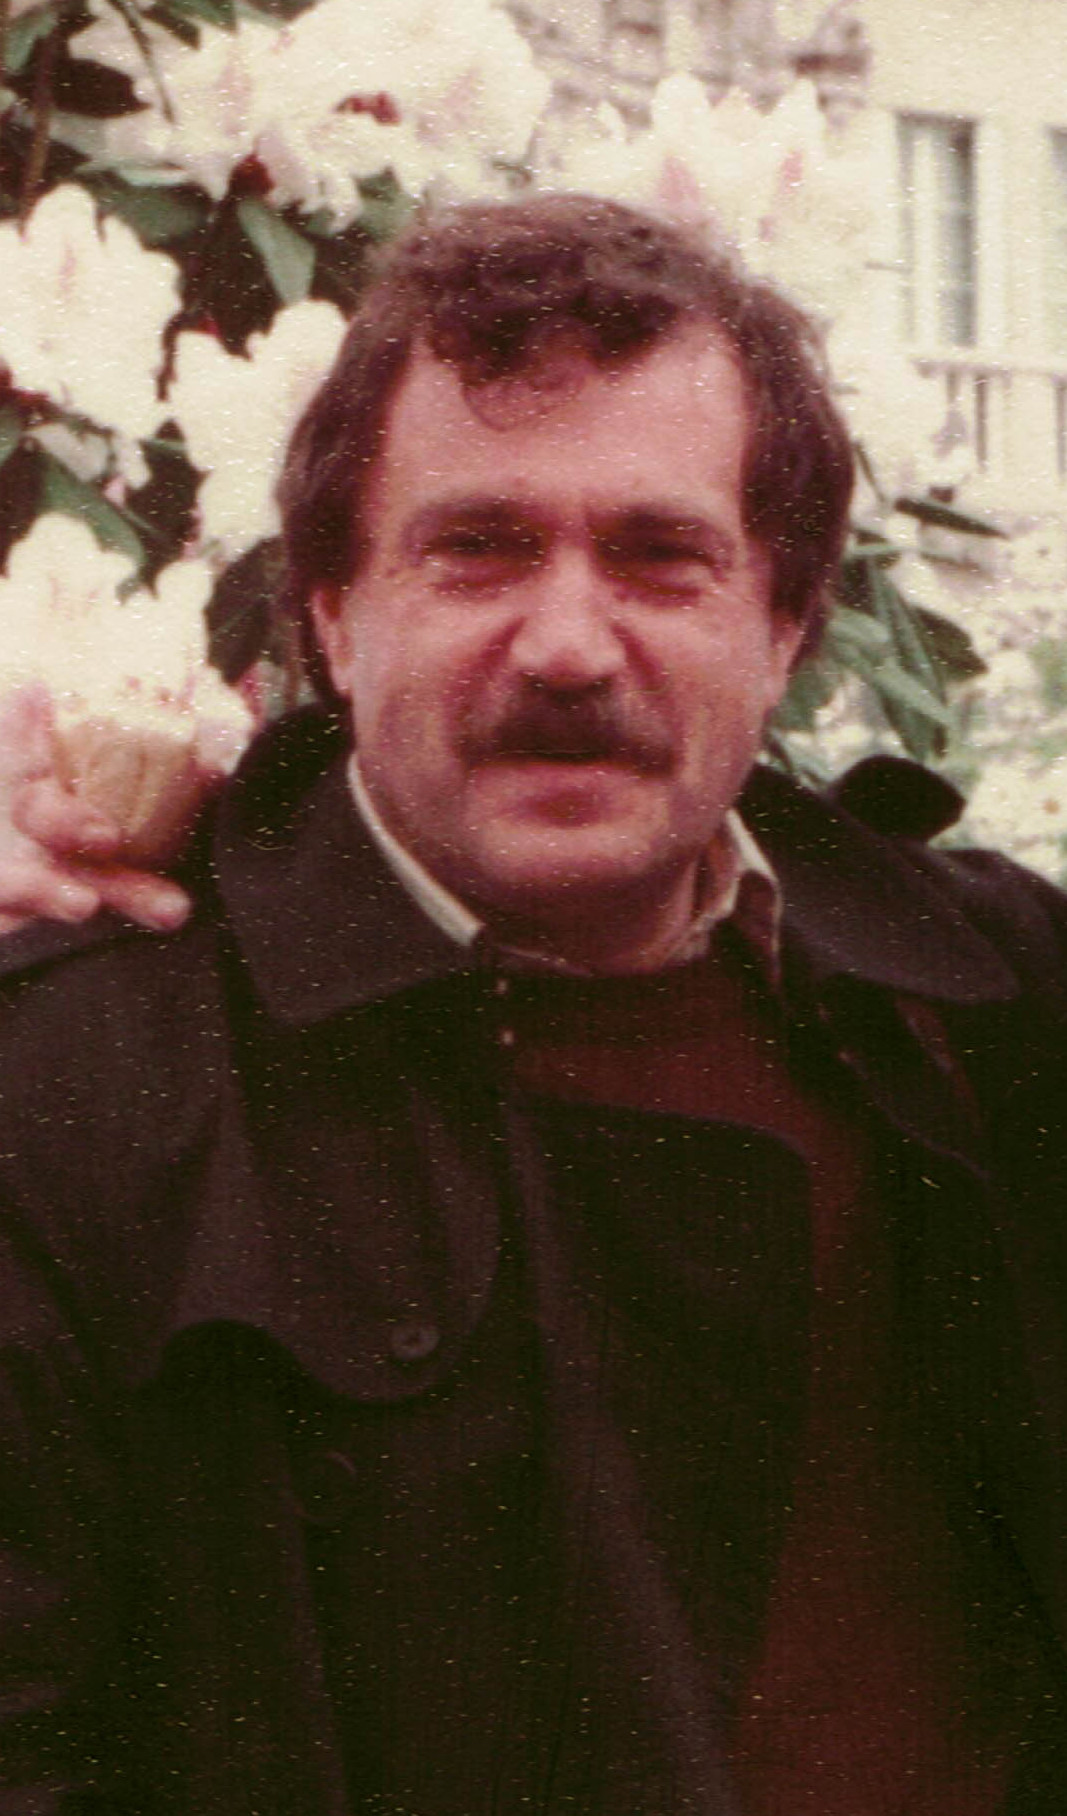 №529+ Василий Аксенов, Орлеан, апрель 1983 (cropped).jpg